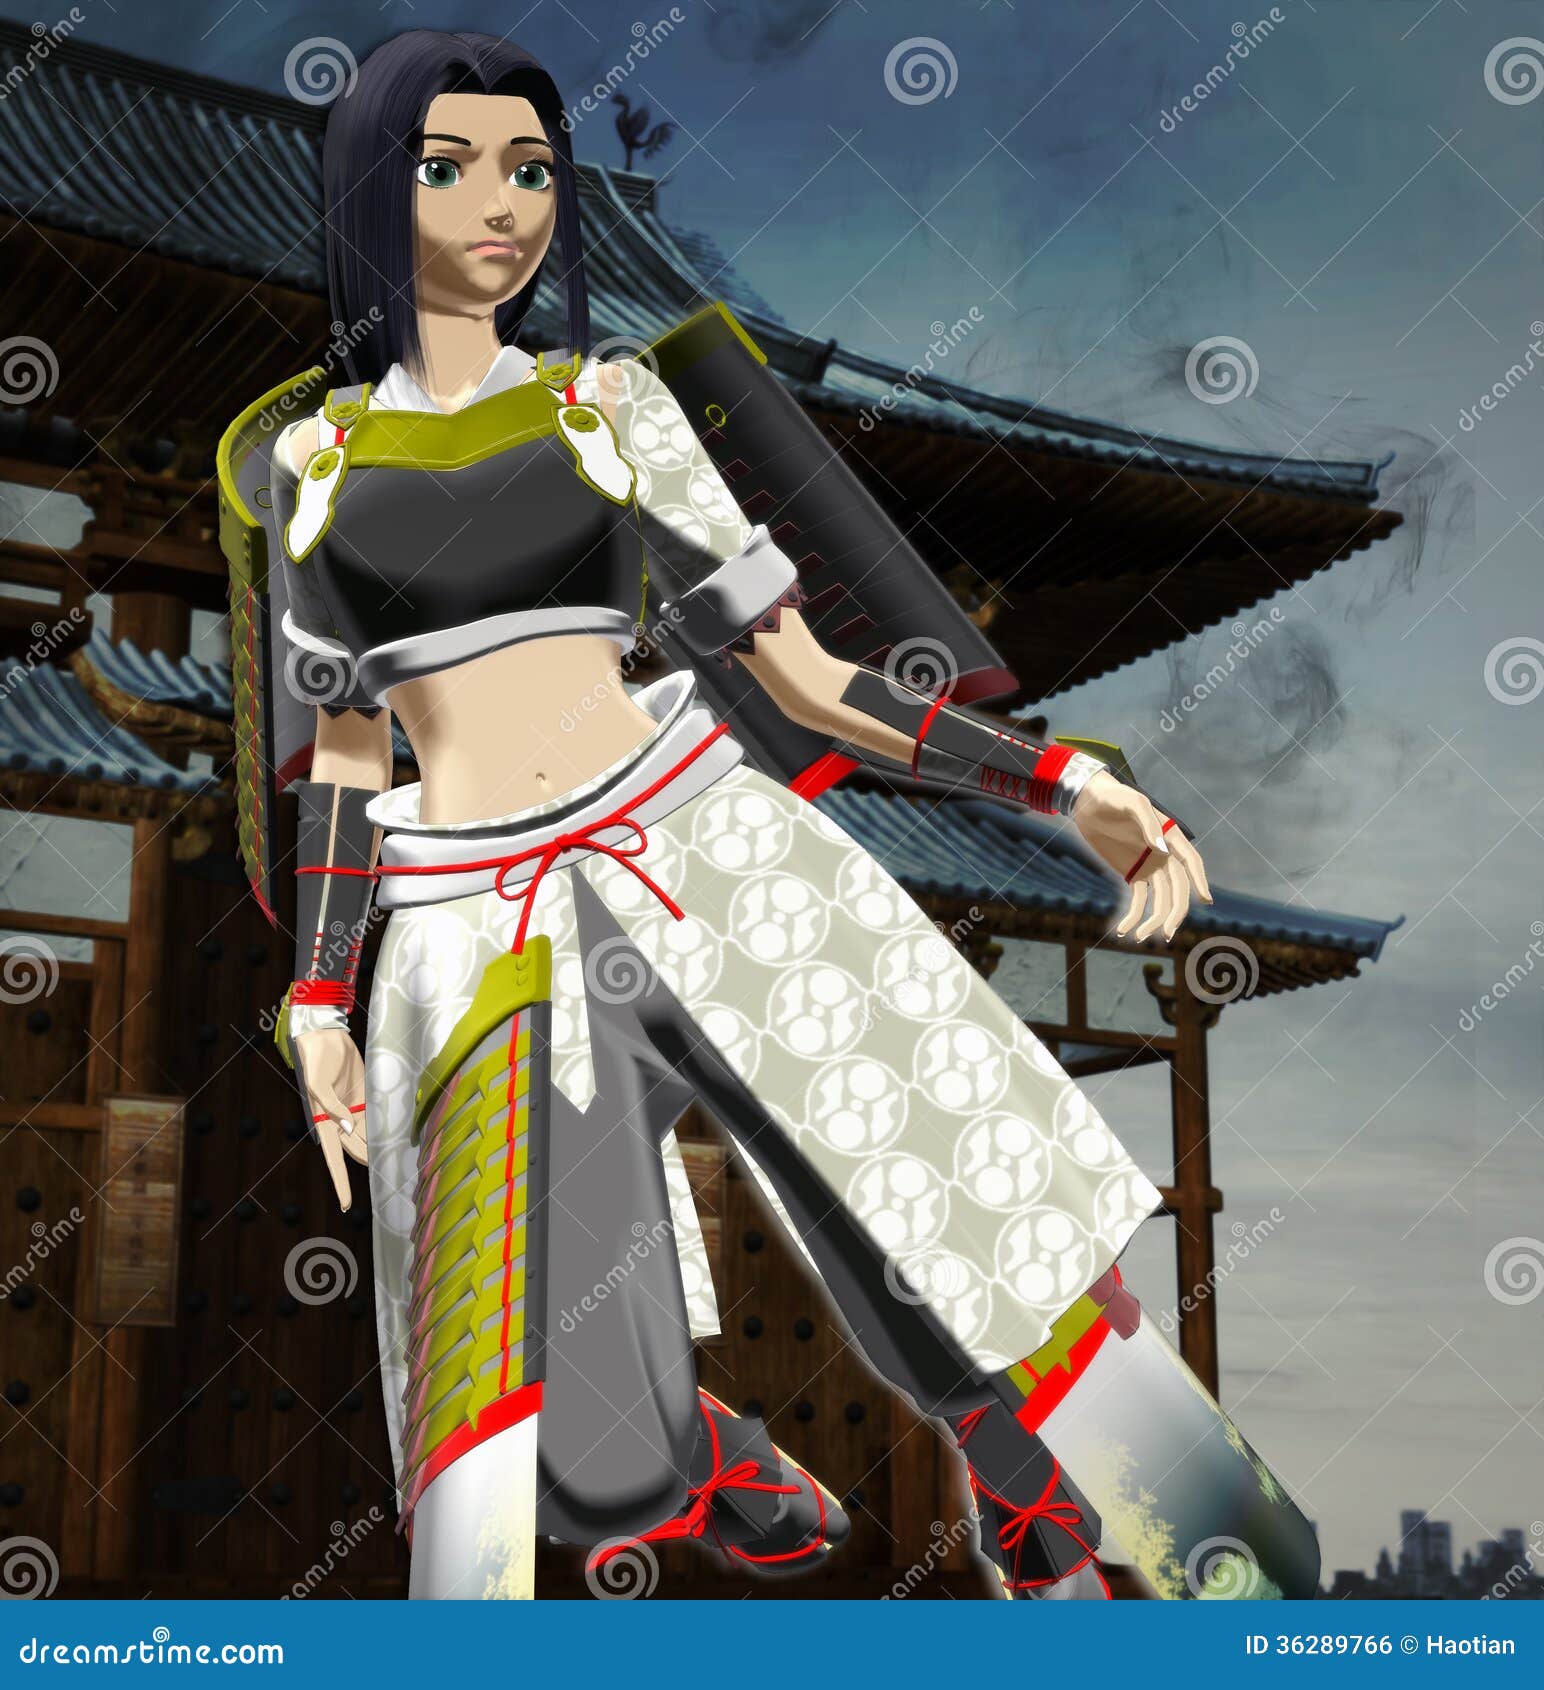 Female Anime Samurai